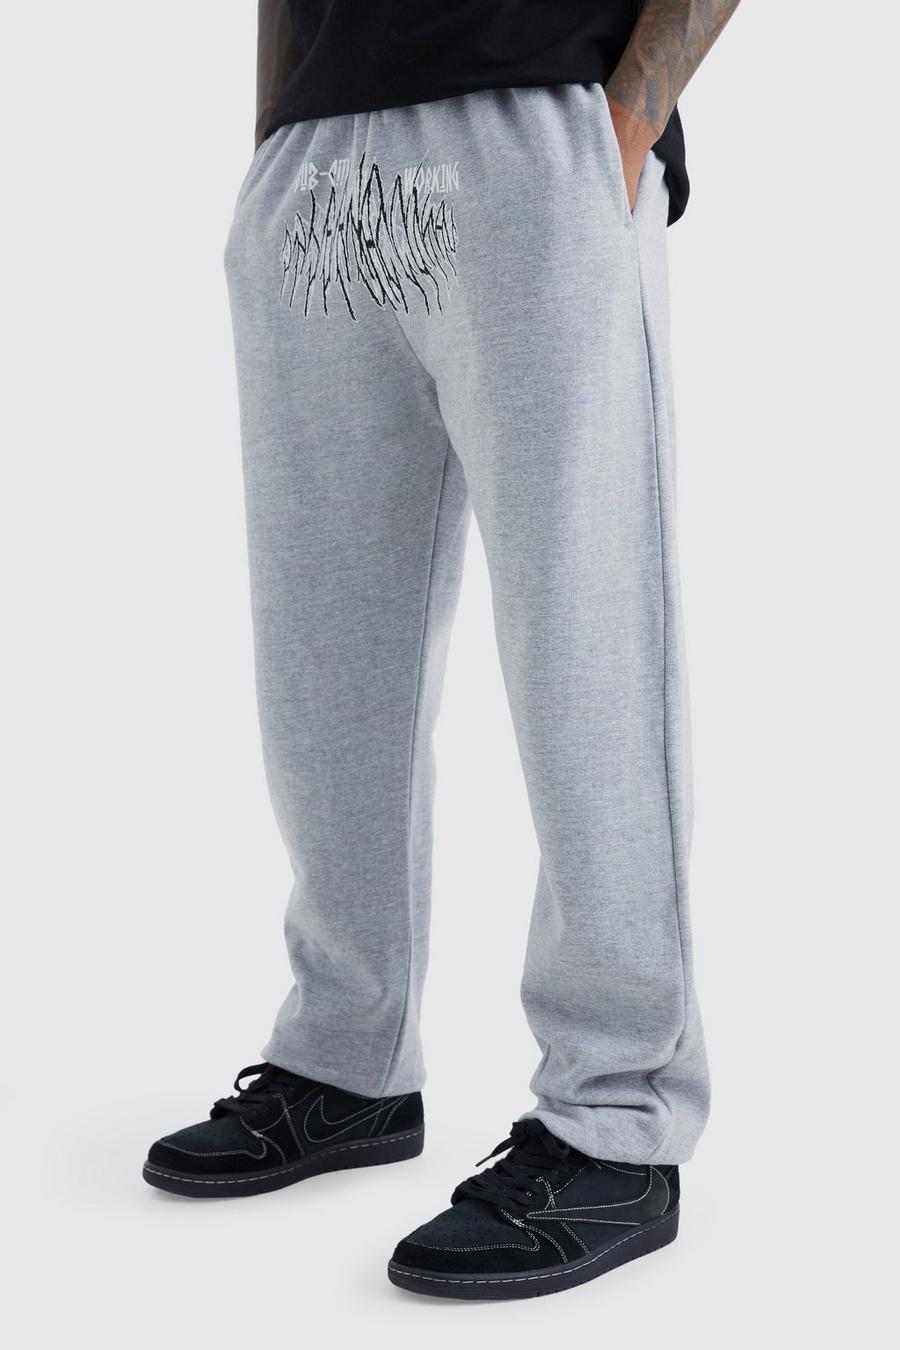 Pantalón deportivo con estampado gráfico de ciudad secundaria, Grey marl grigio